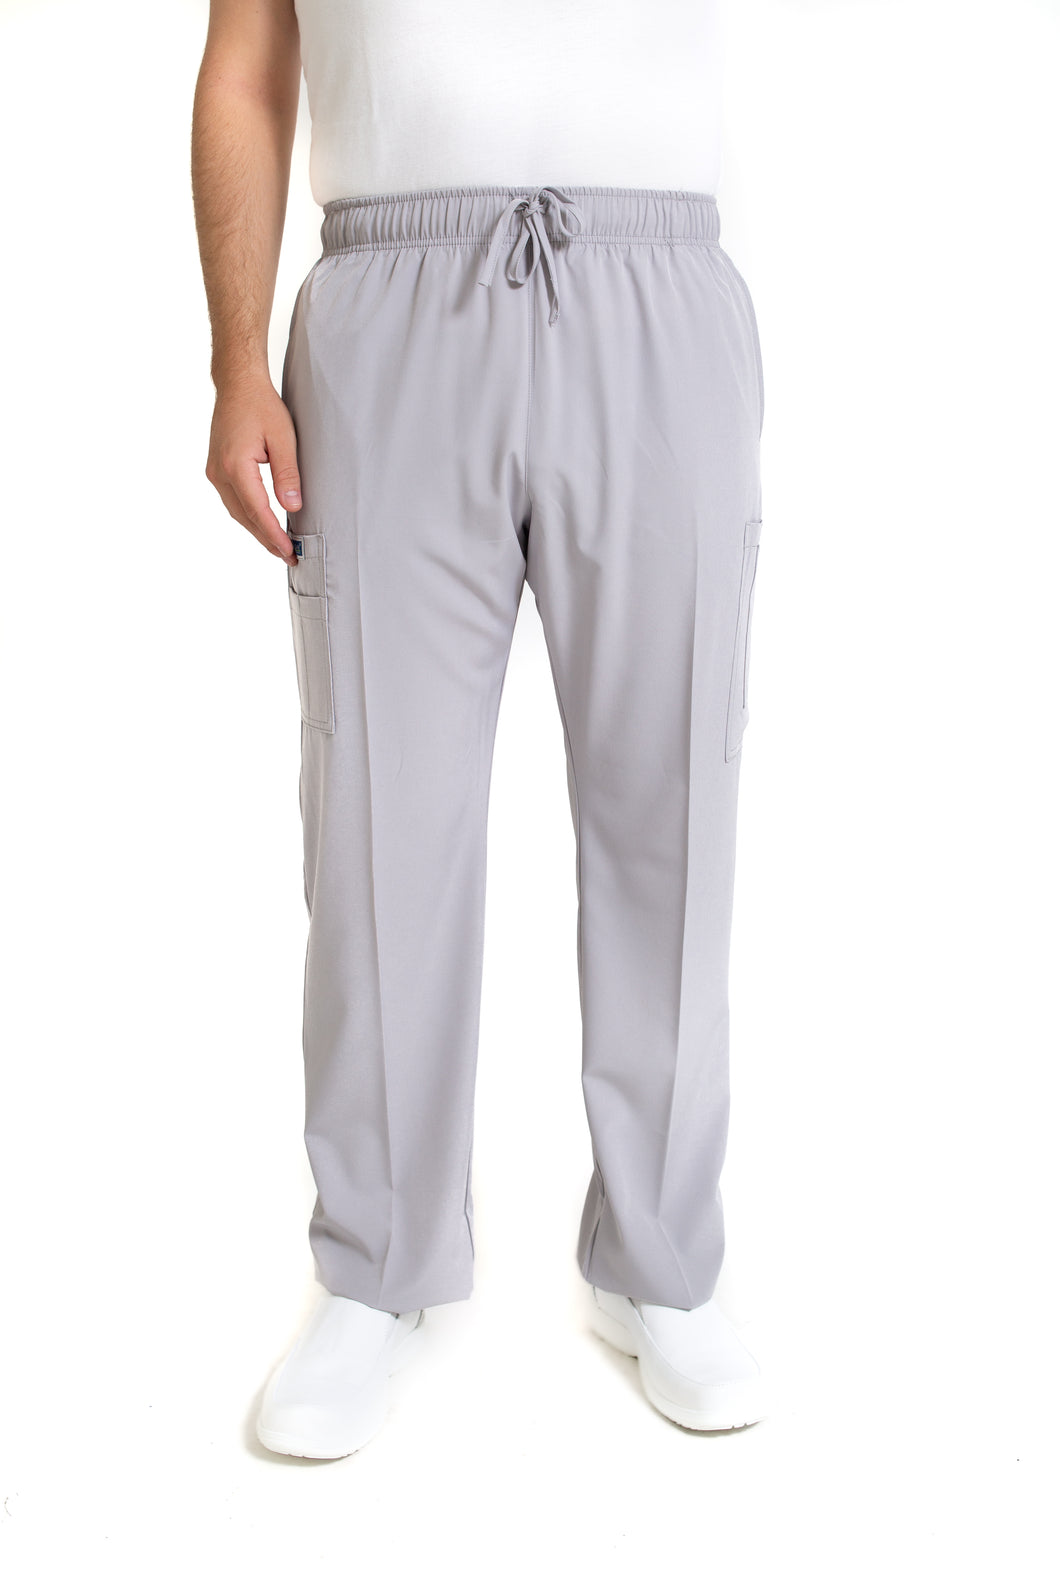 Pantalón Pant EA-02P REPELENTE A FLUIDOS-Color GRIS HOMBRE-HASSAN Uniformes